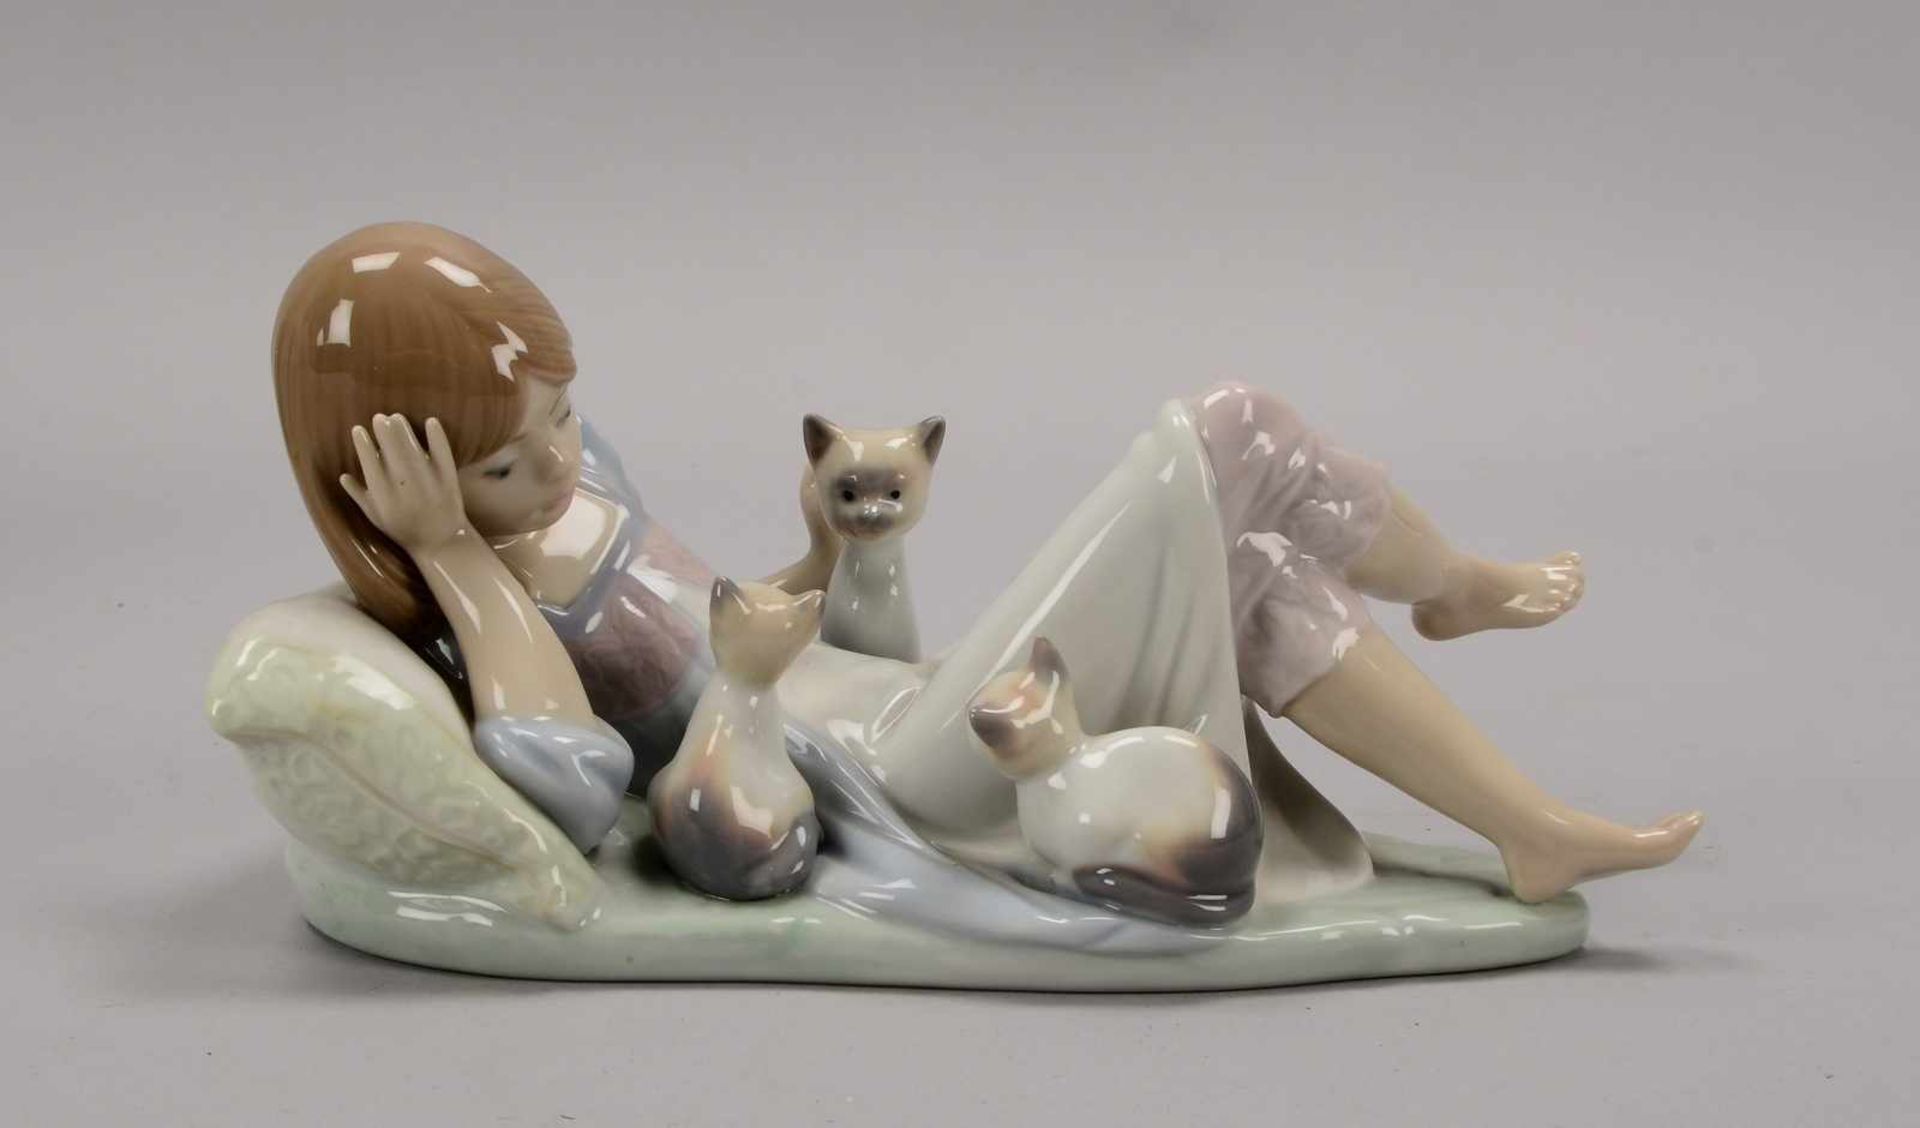 Lladro/Spanien, Porzellanfigur, 'Unterbrochene Mittagsruh', pastellige Unterglasurfarben, Figur in